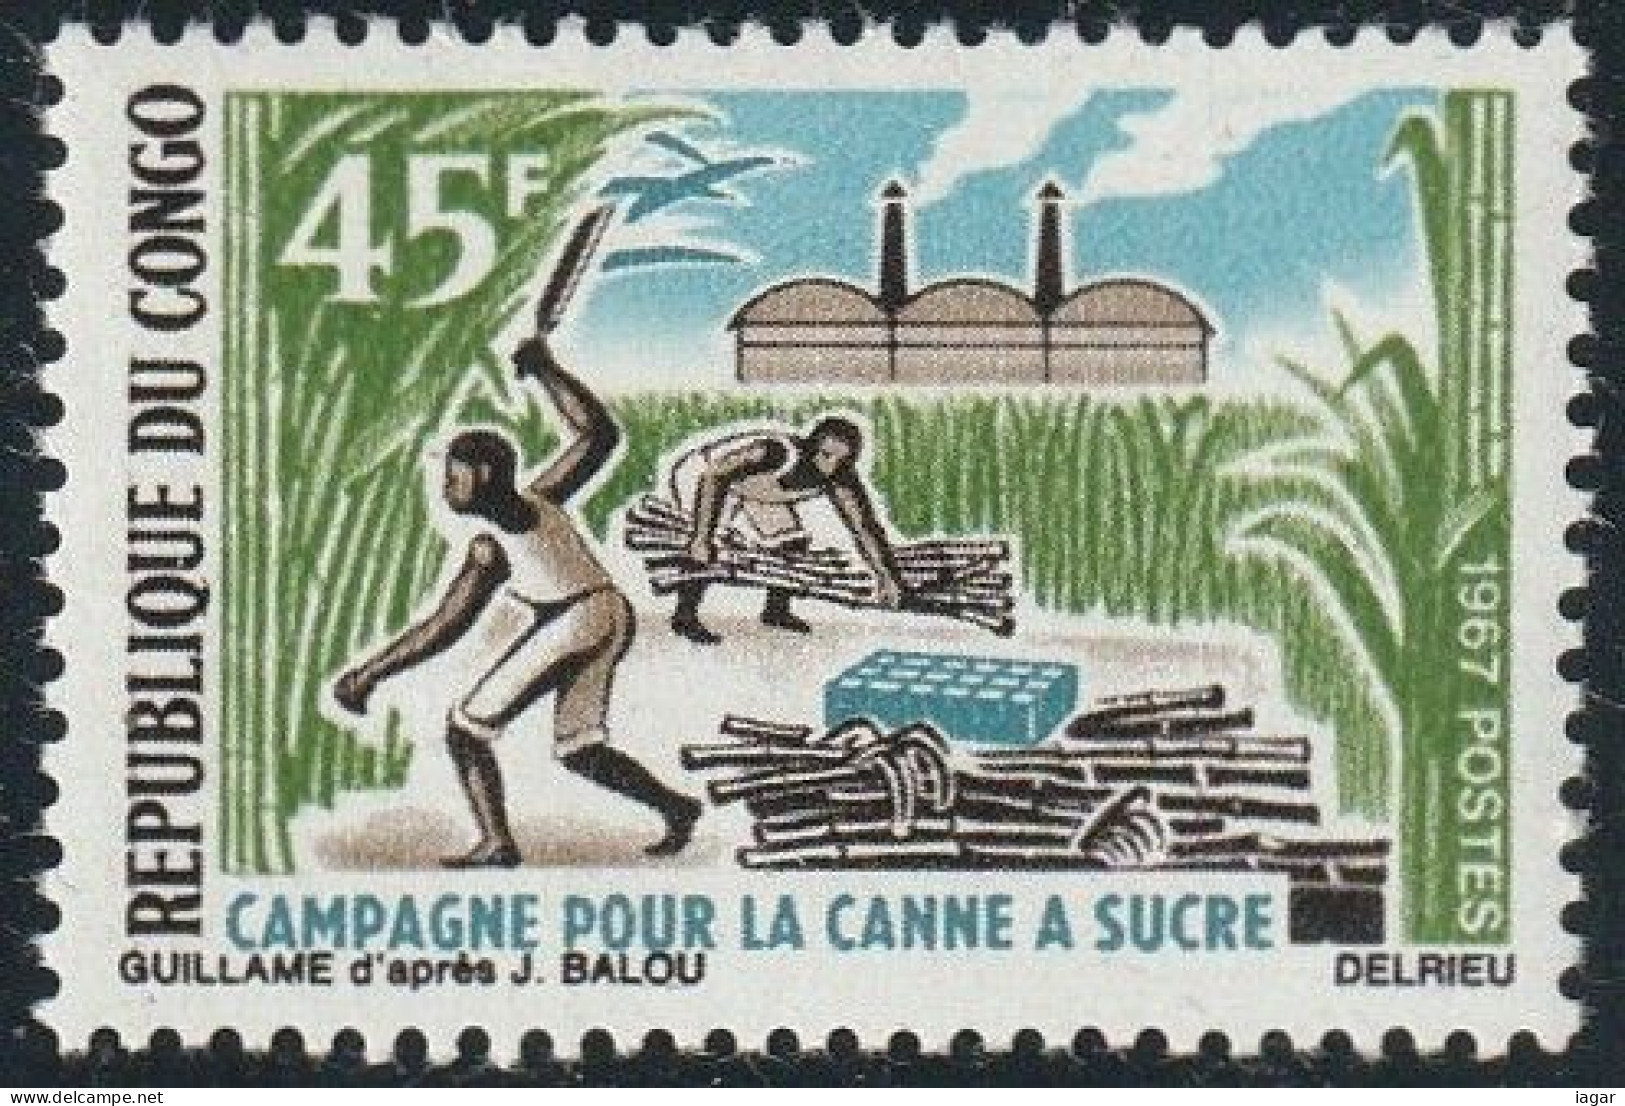 THEMATIQUE AGRICULTURE:  CAMPAGNE POUR LA CANNE A' SUCRE   -    CONGO - Agriculture